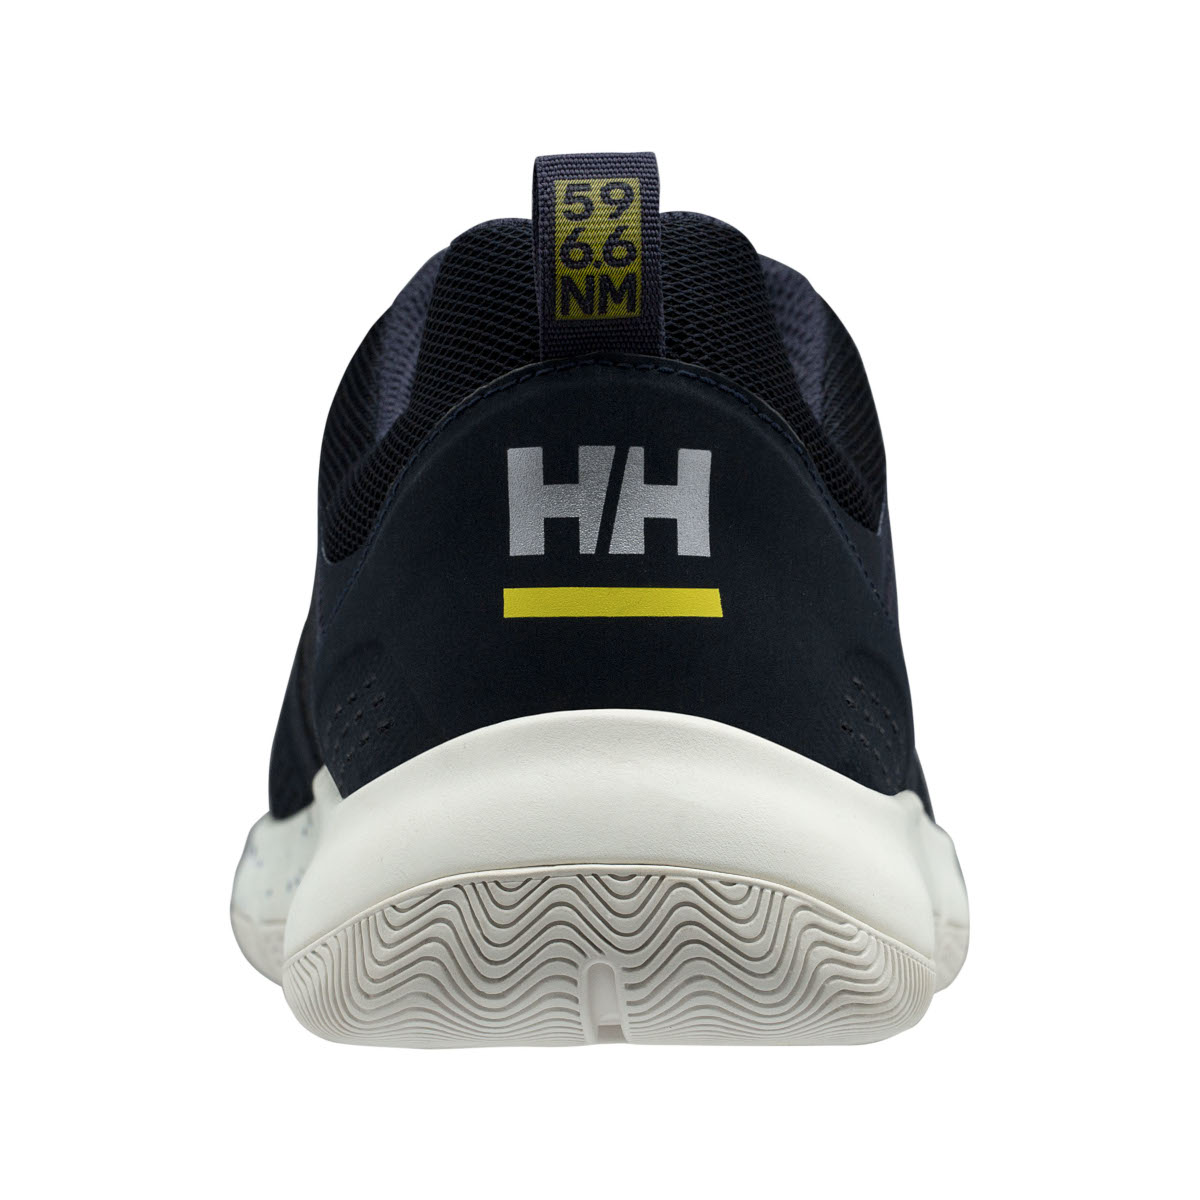 Helly Hansen Skagen F-1 chaussures de voile offshore hommes bleu marine, taille 44